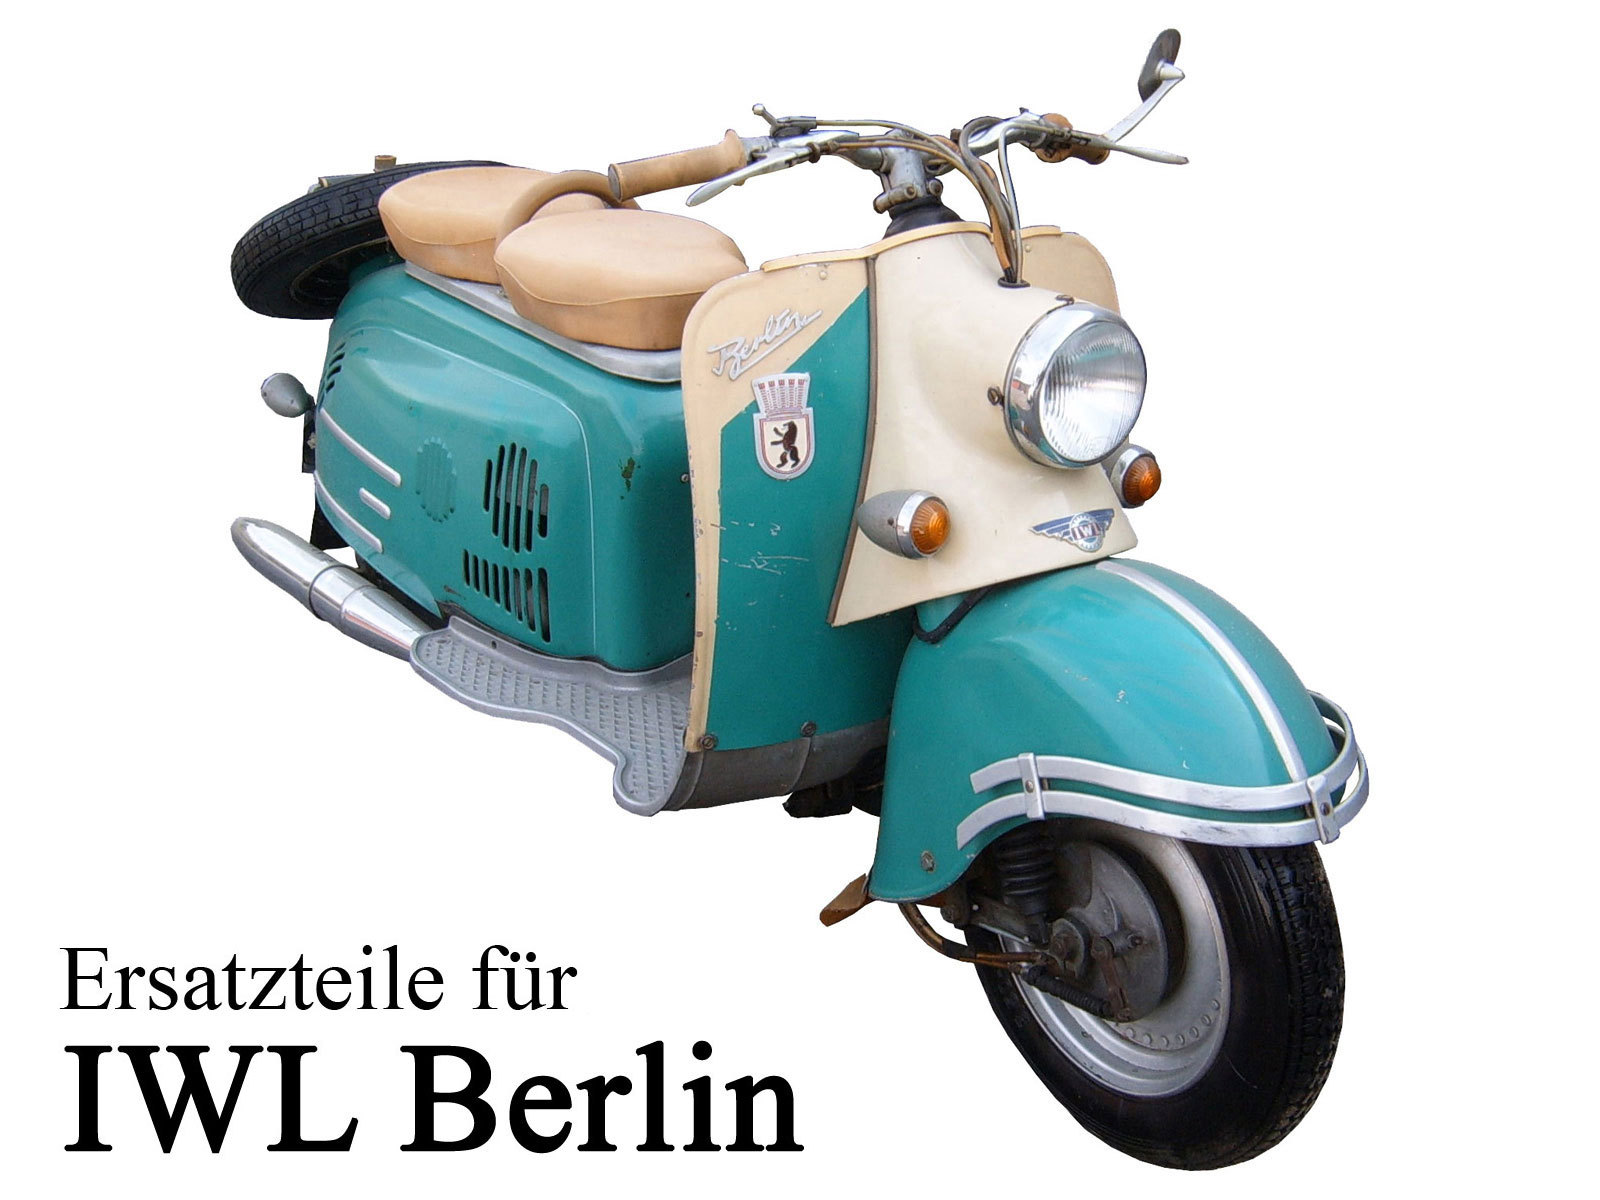 Ersatzteile kaufen für die DDR-Motorroller IWL Berliner SR 59